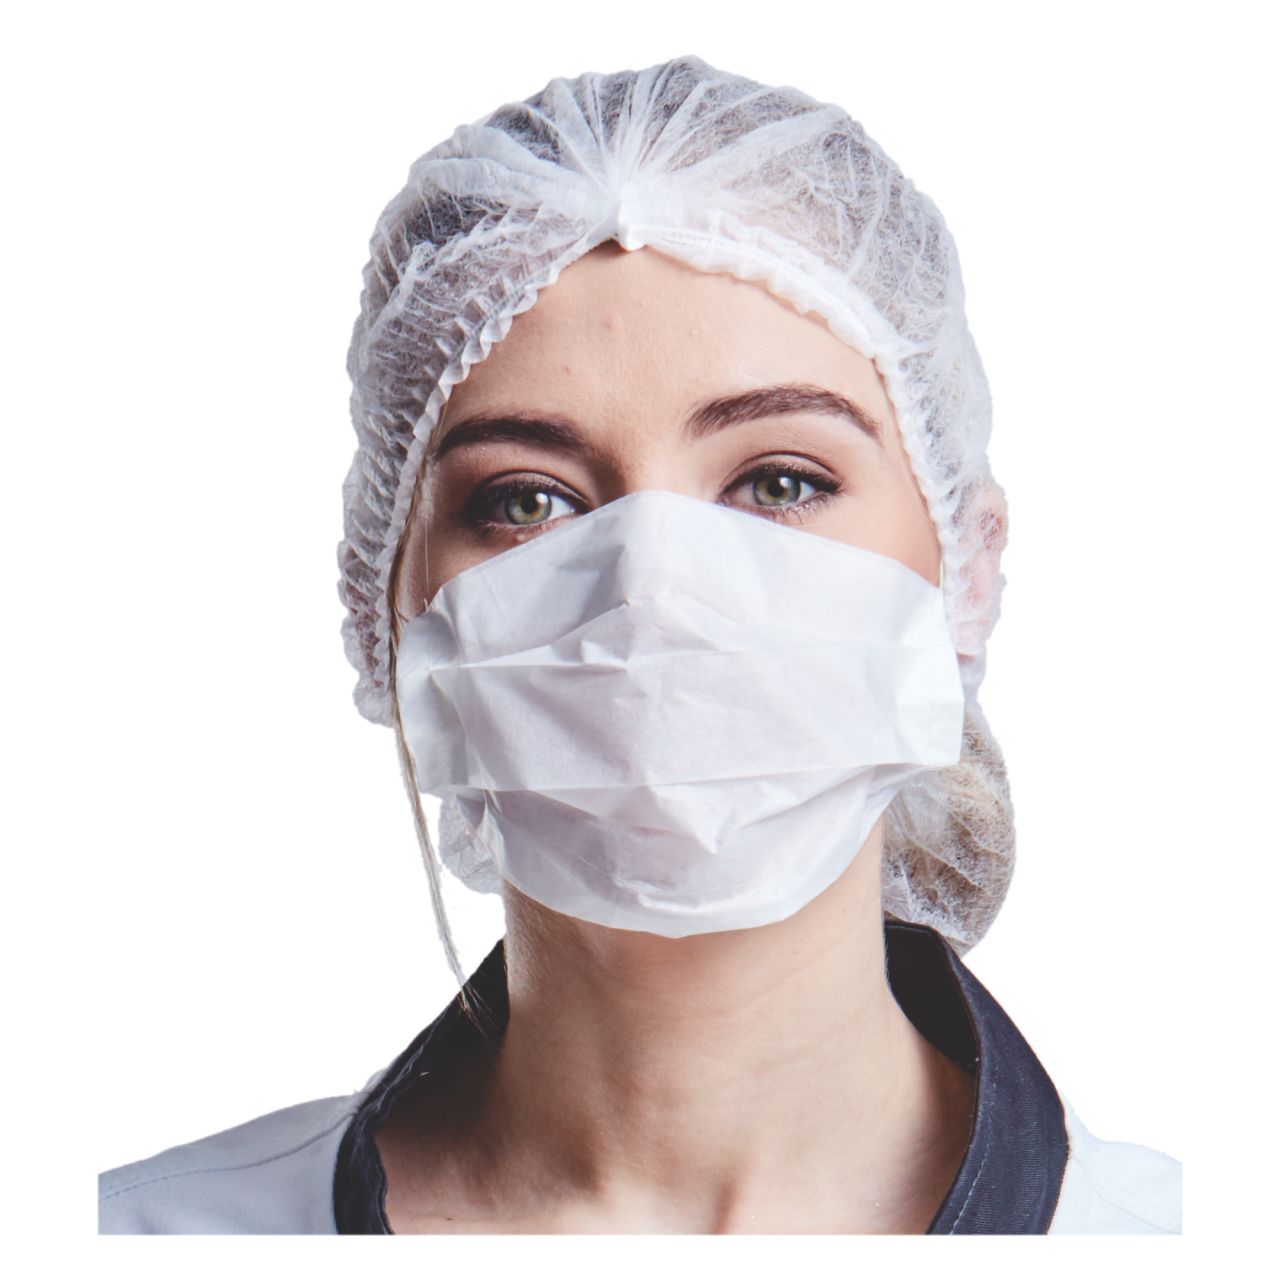 Download PNG image - Nurse Medical Mask PNG File 